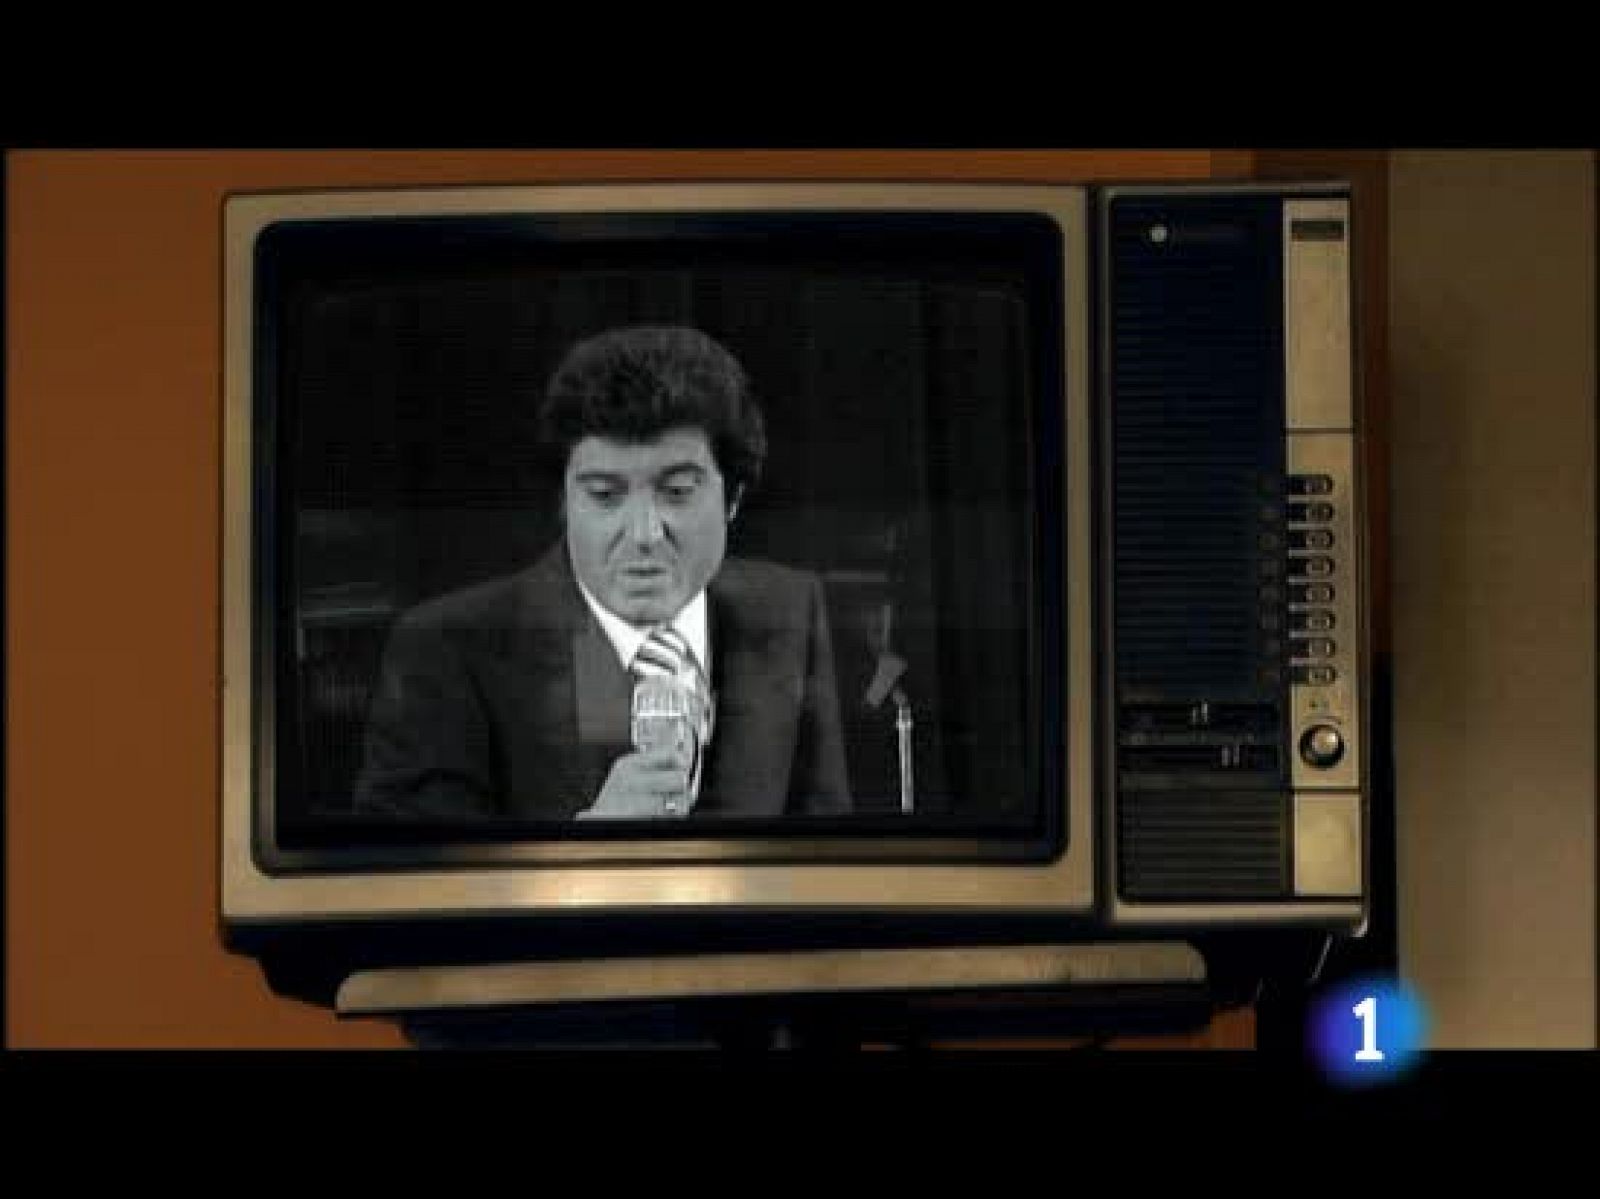 Cuéntame - Así contó TVE las elecciones de 1977 (Cuéntame)